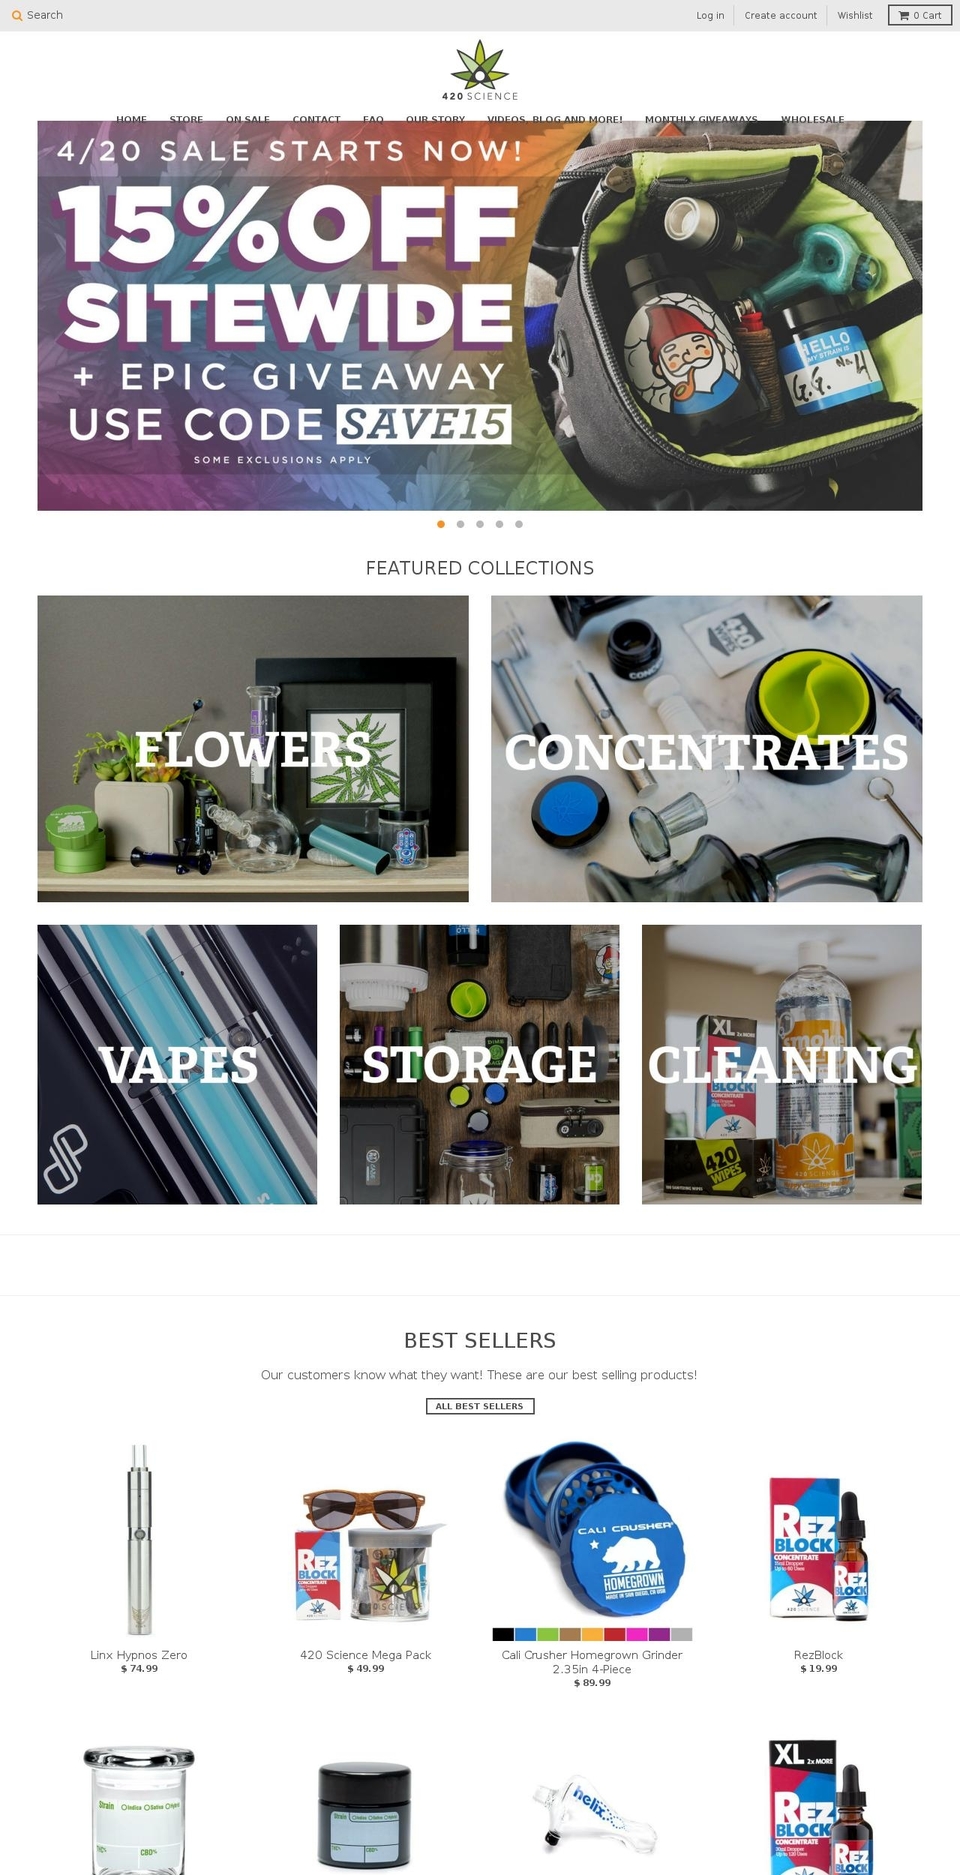 420science.com shopify website screenshot